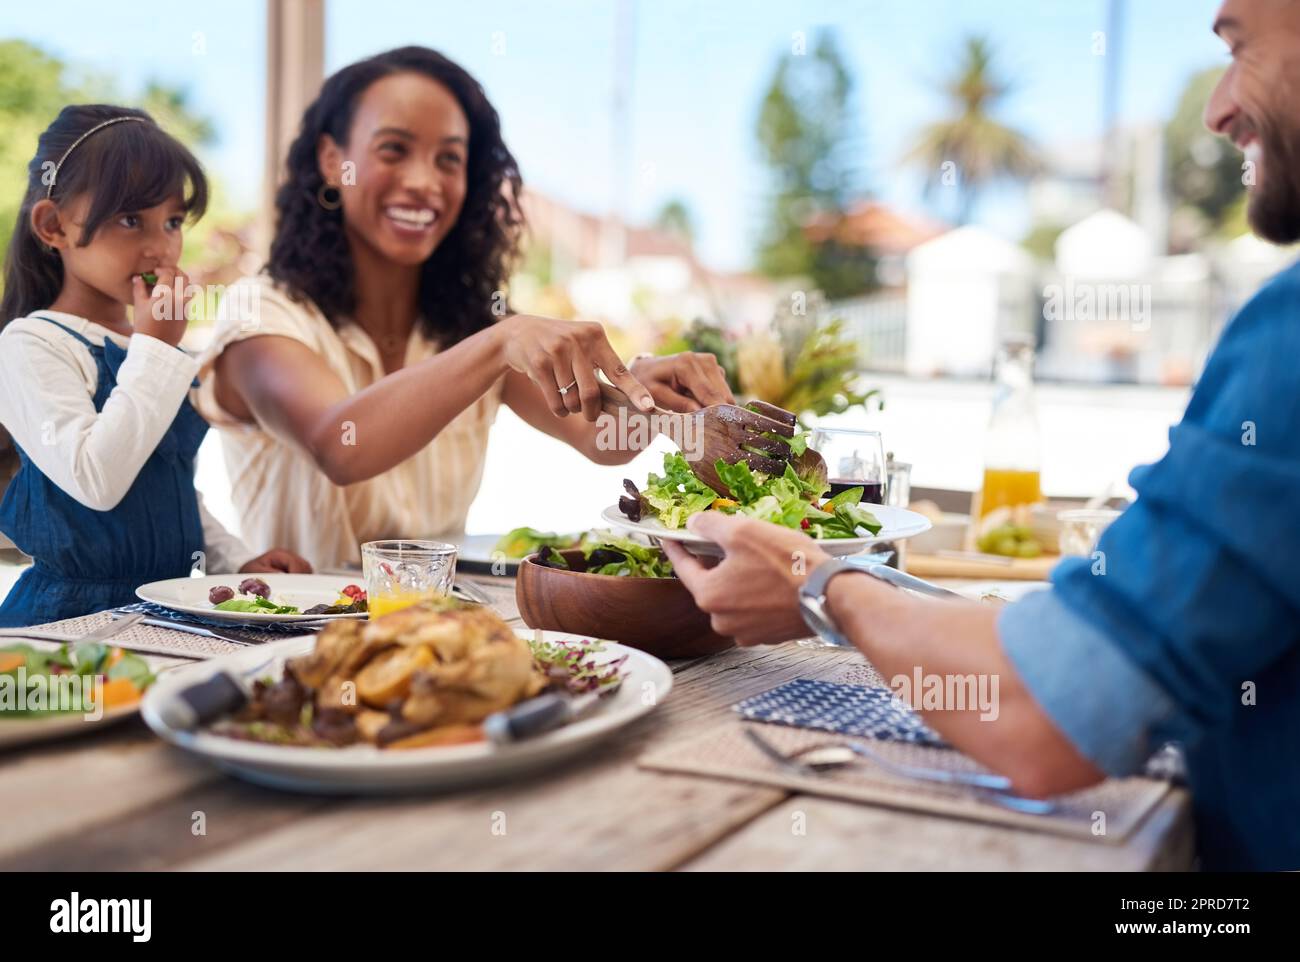 Si assicura sempre che manteniamo una dieta sana. una bella giovane donna che gusta l'insalata nel piatto dei mariti mentre si gusta un pasto con la famiglia all'aperto. Foto Stock